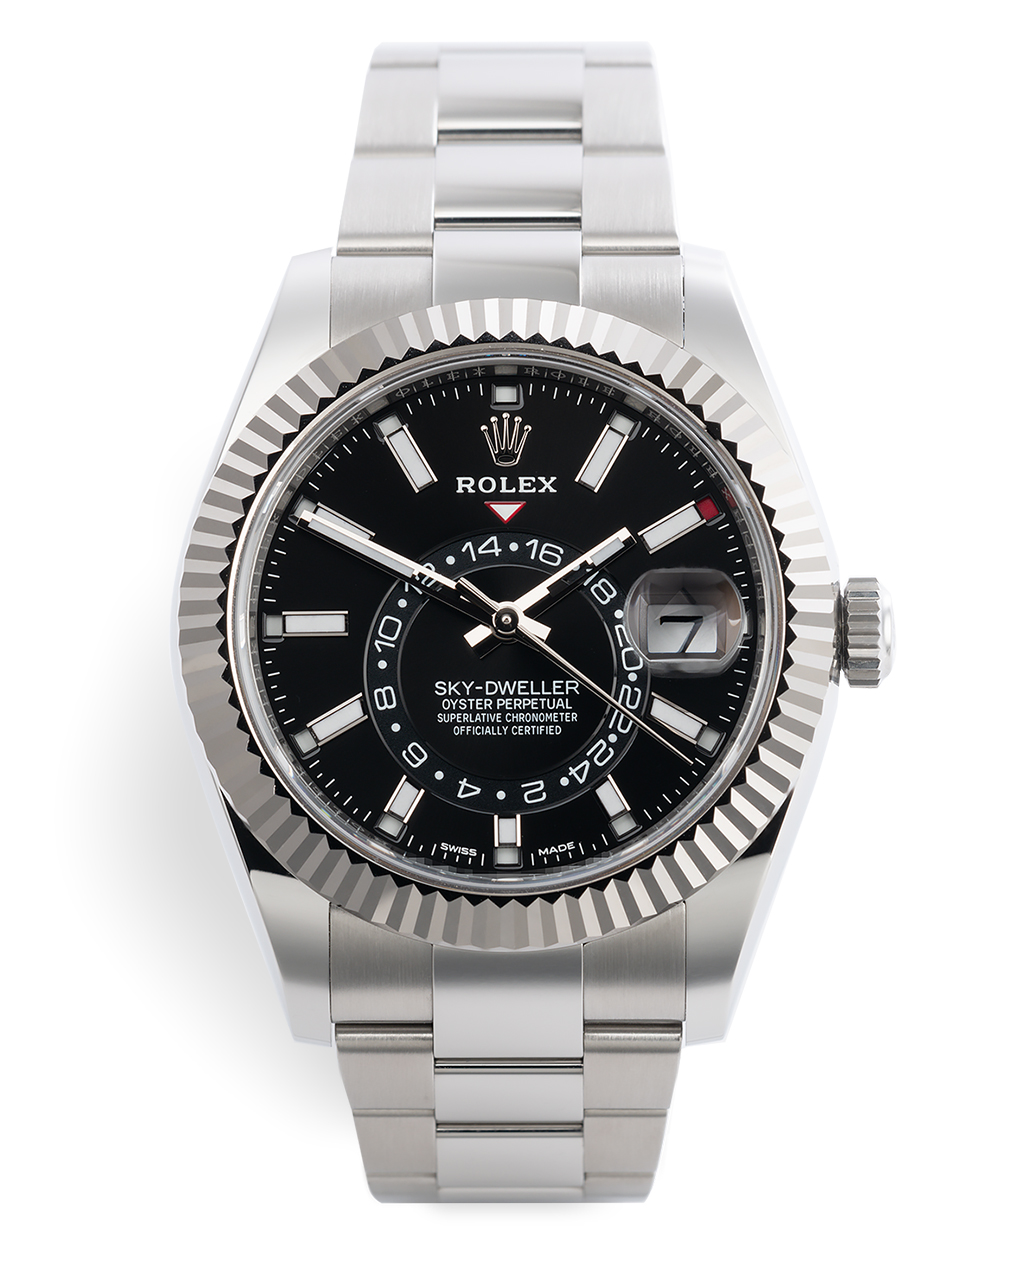 Rolex Sky Dweller Watches | ref 326934 | Rolex Warranty to 2024 | The